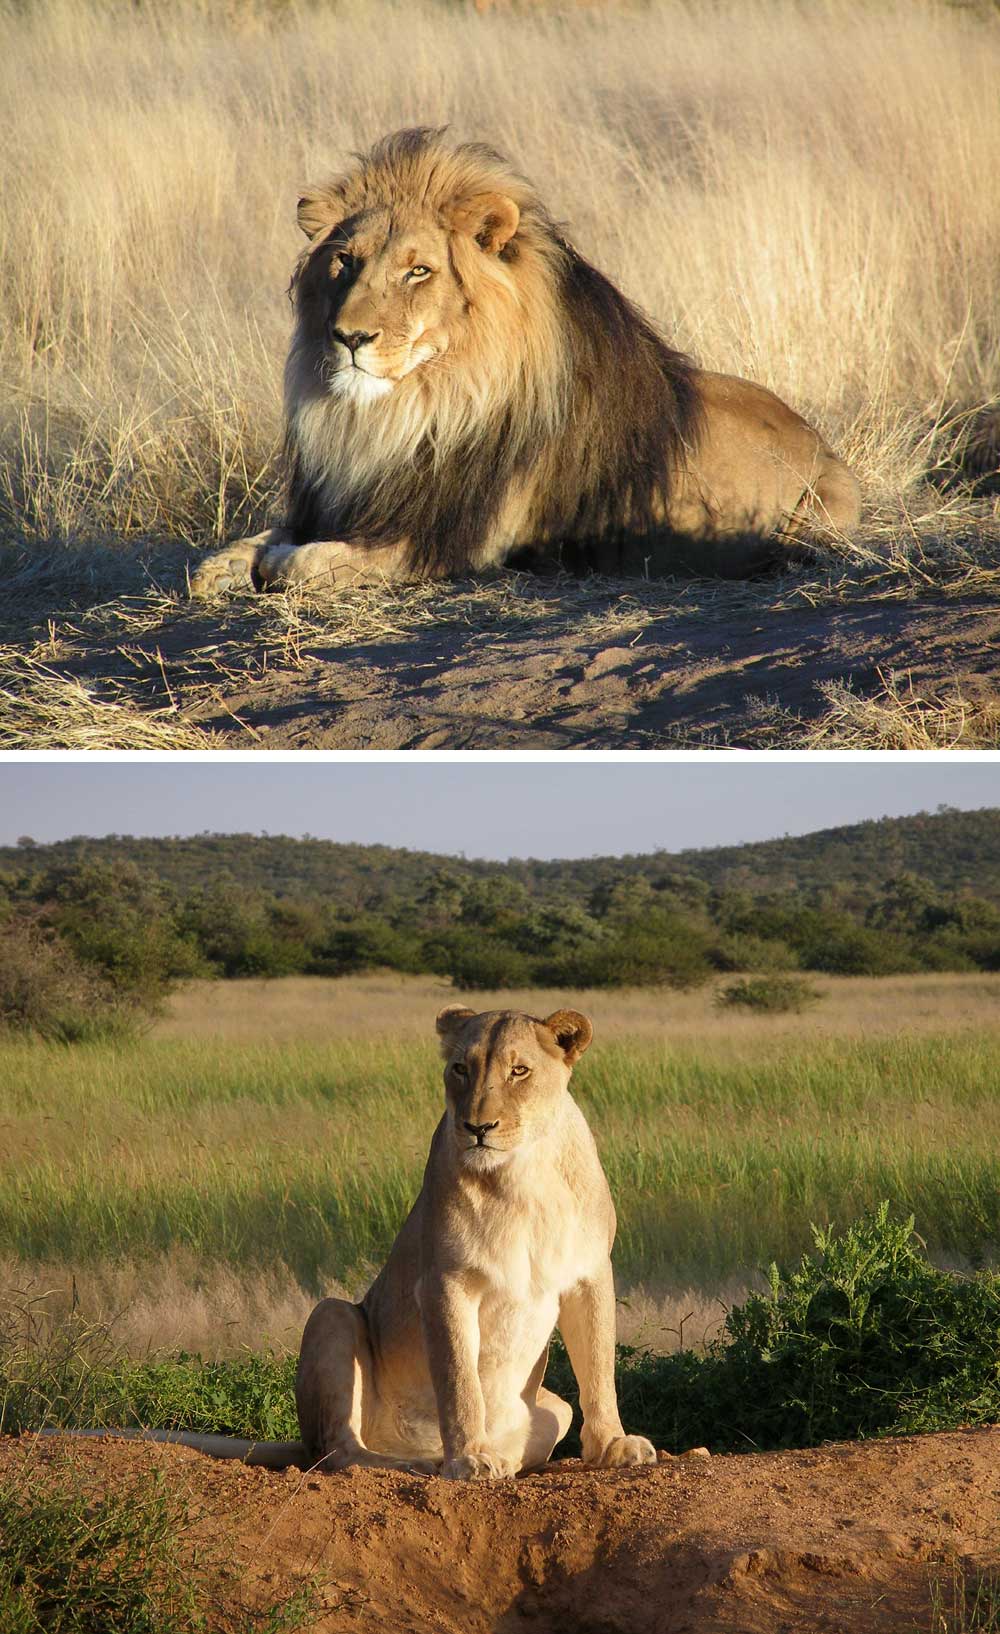 Fakta: Lejonhannar och lejonhonor har olika uppgifter i lejonflocken